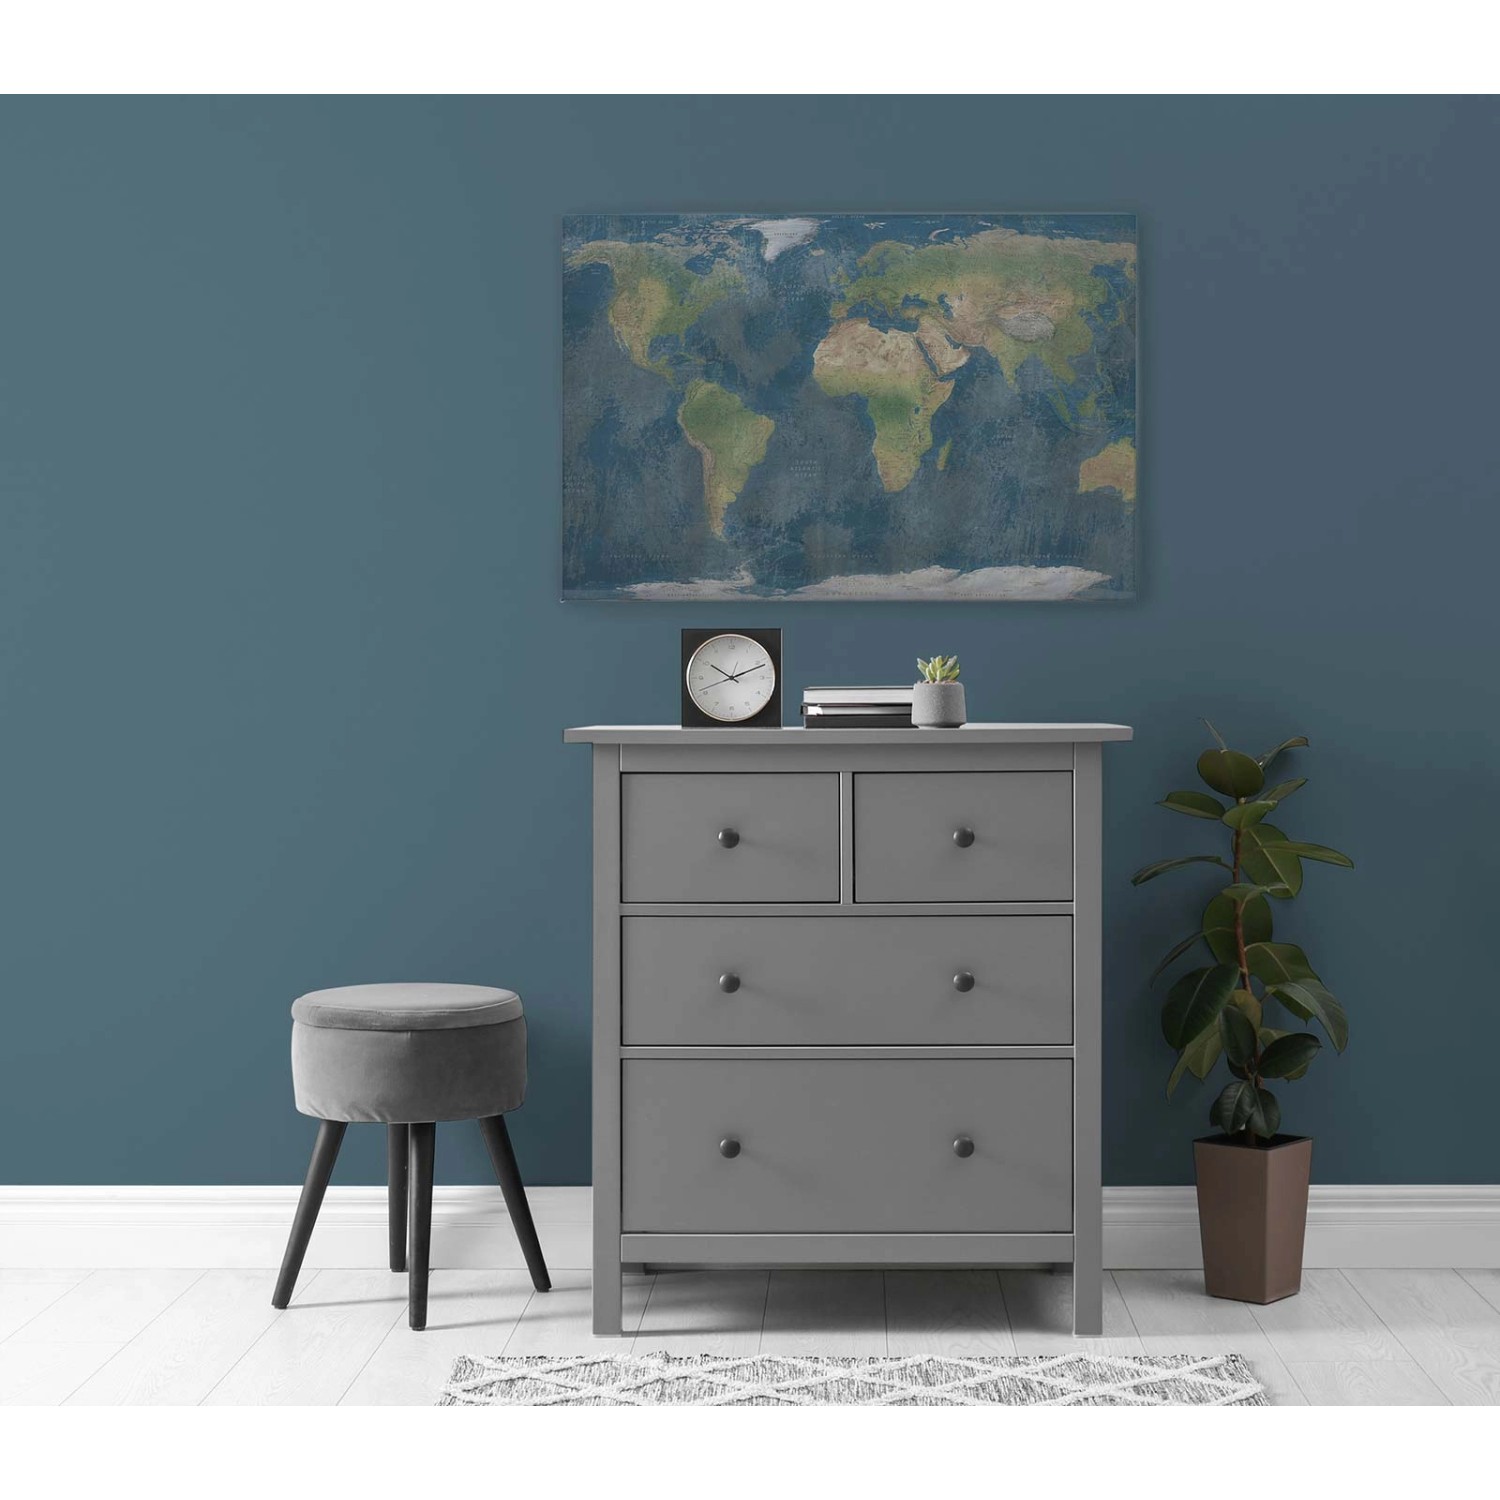 Bricoflor Leinwandbild 120X80 Weltkarte Deko Wandbild Mit Landkarte Blau Grün Ideal Für Büro Und Wohnzimmer